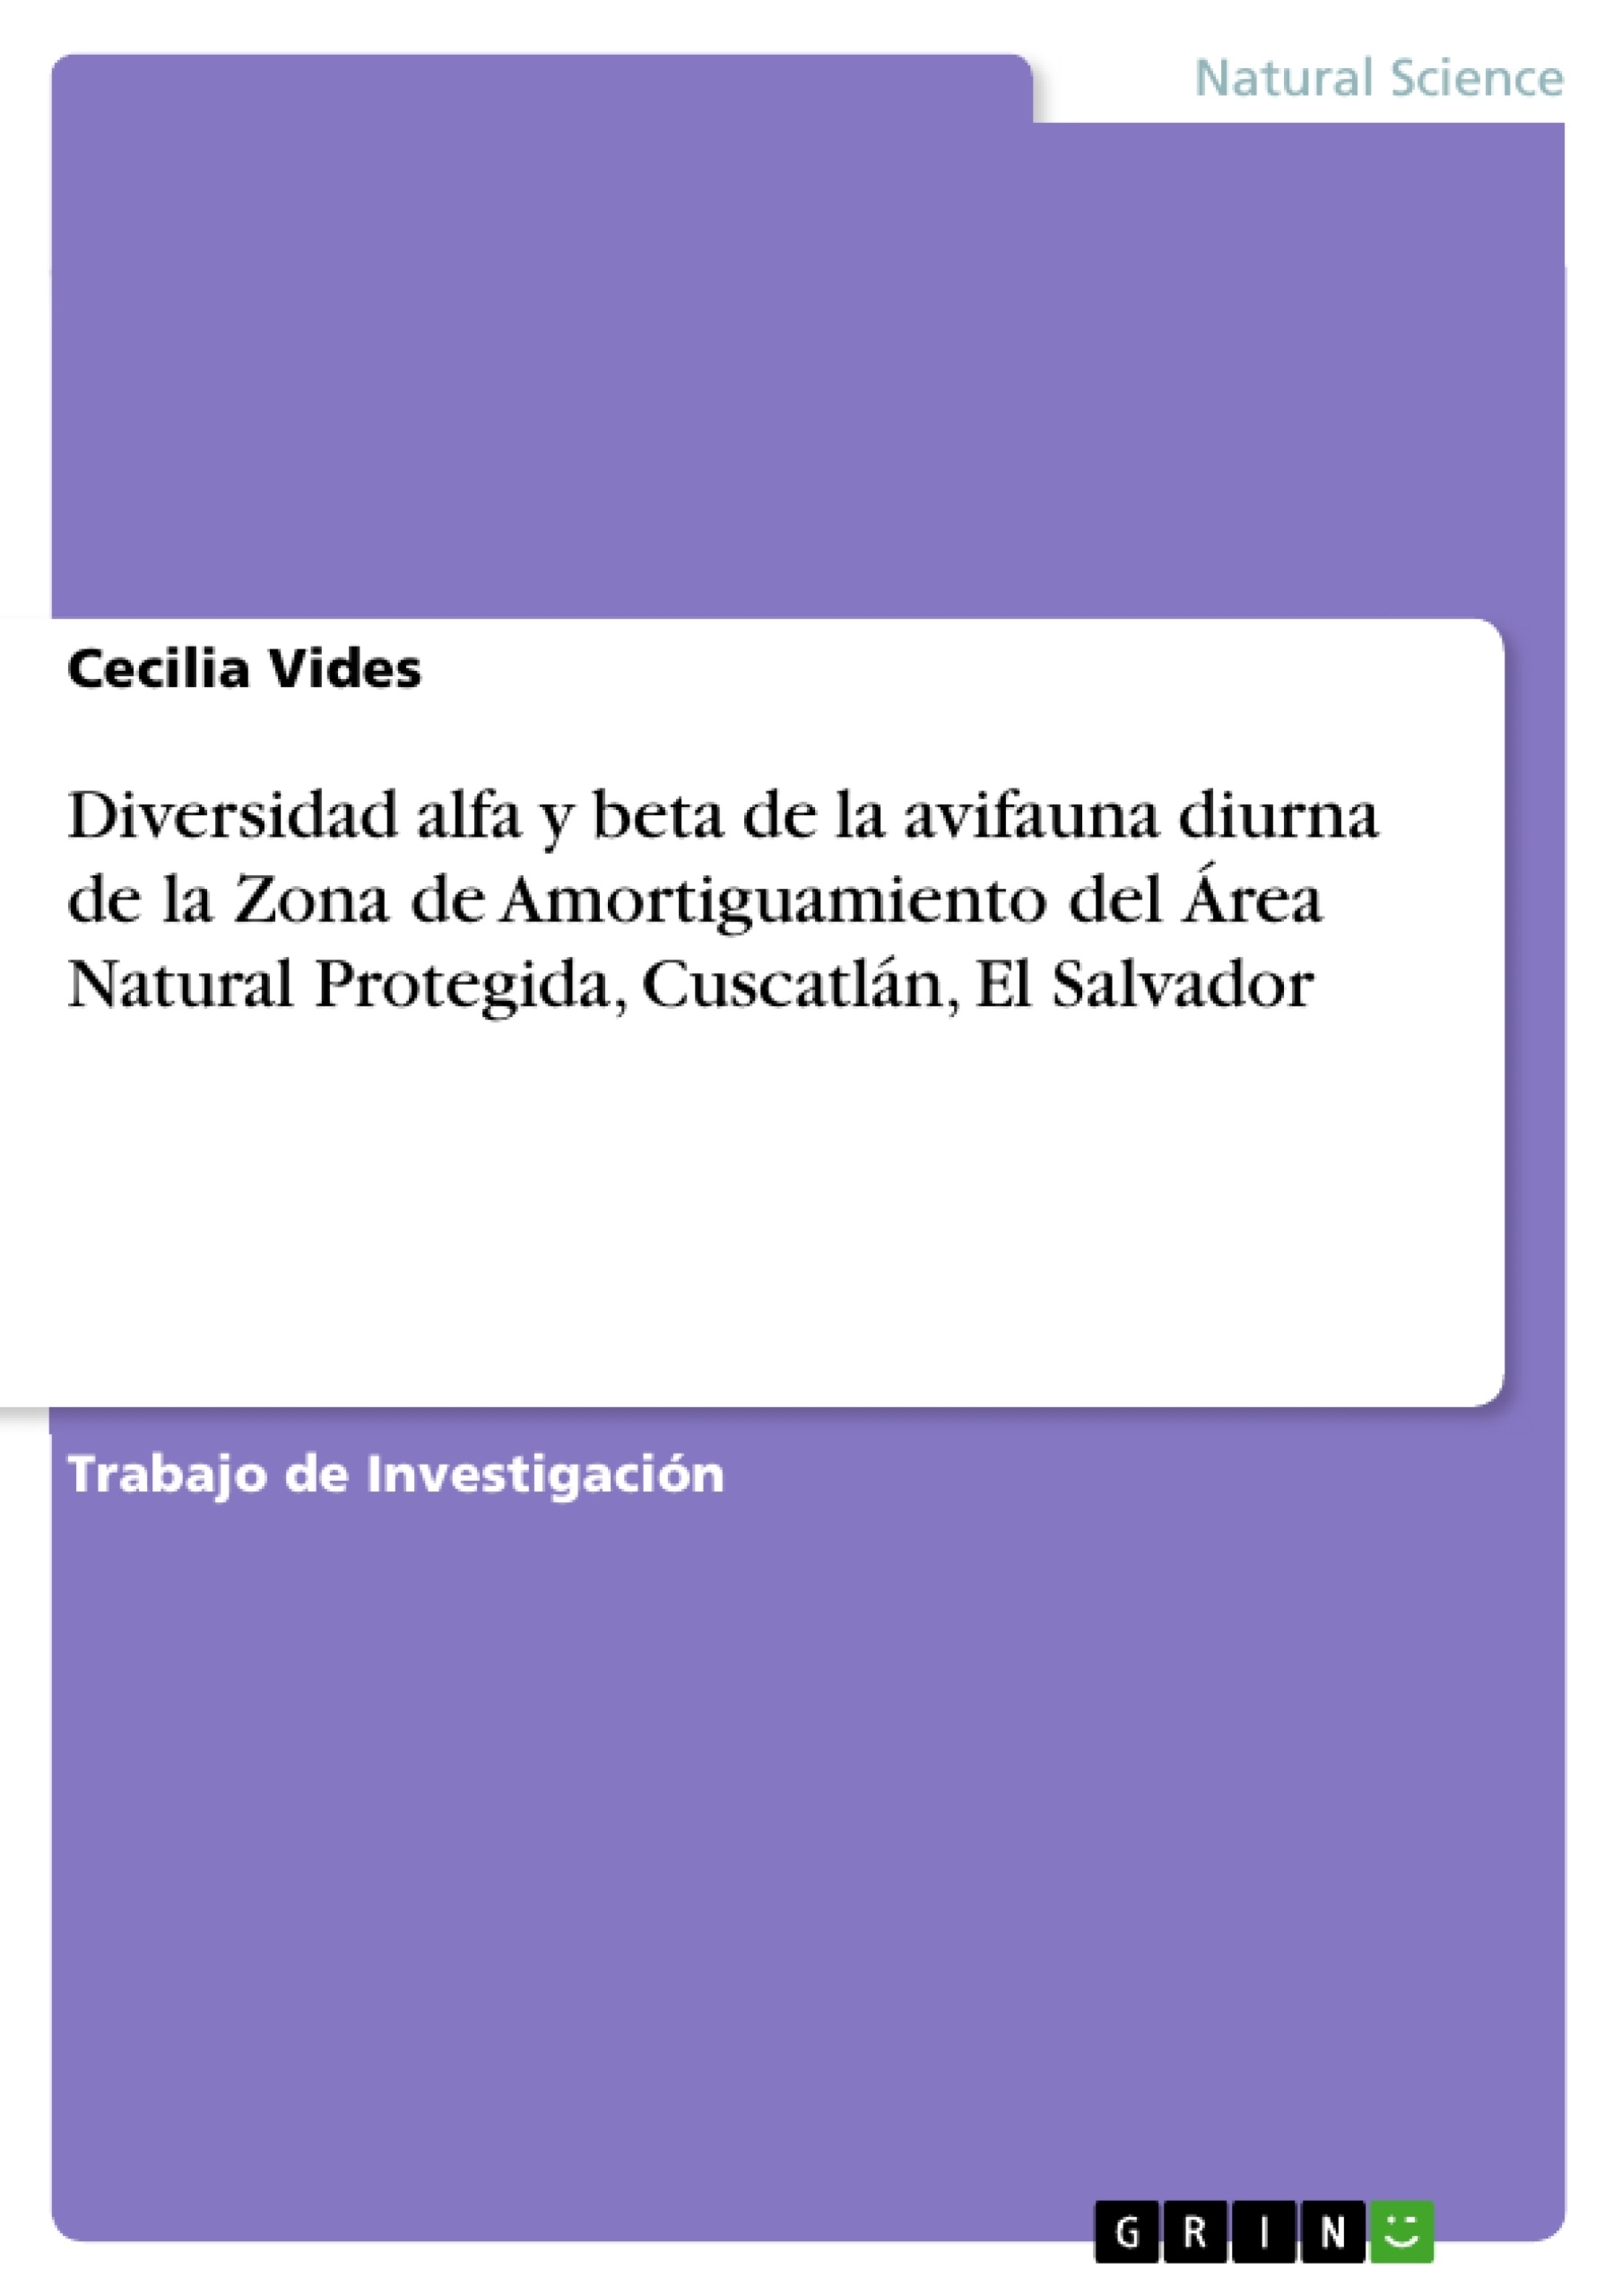 Titel: Diversidad alfa y beta de la avifauna diurna de la Zona de Amortiguamiento del Área Natural Protegida, Cuscatlán, El Salvador